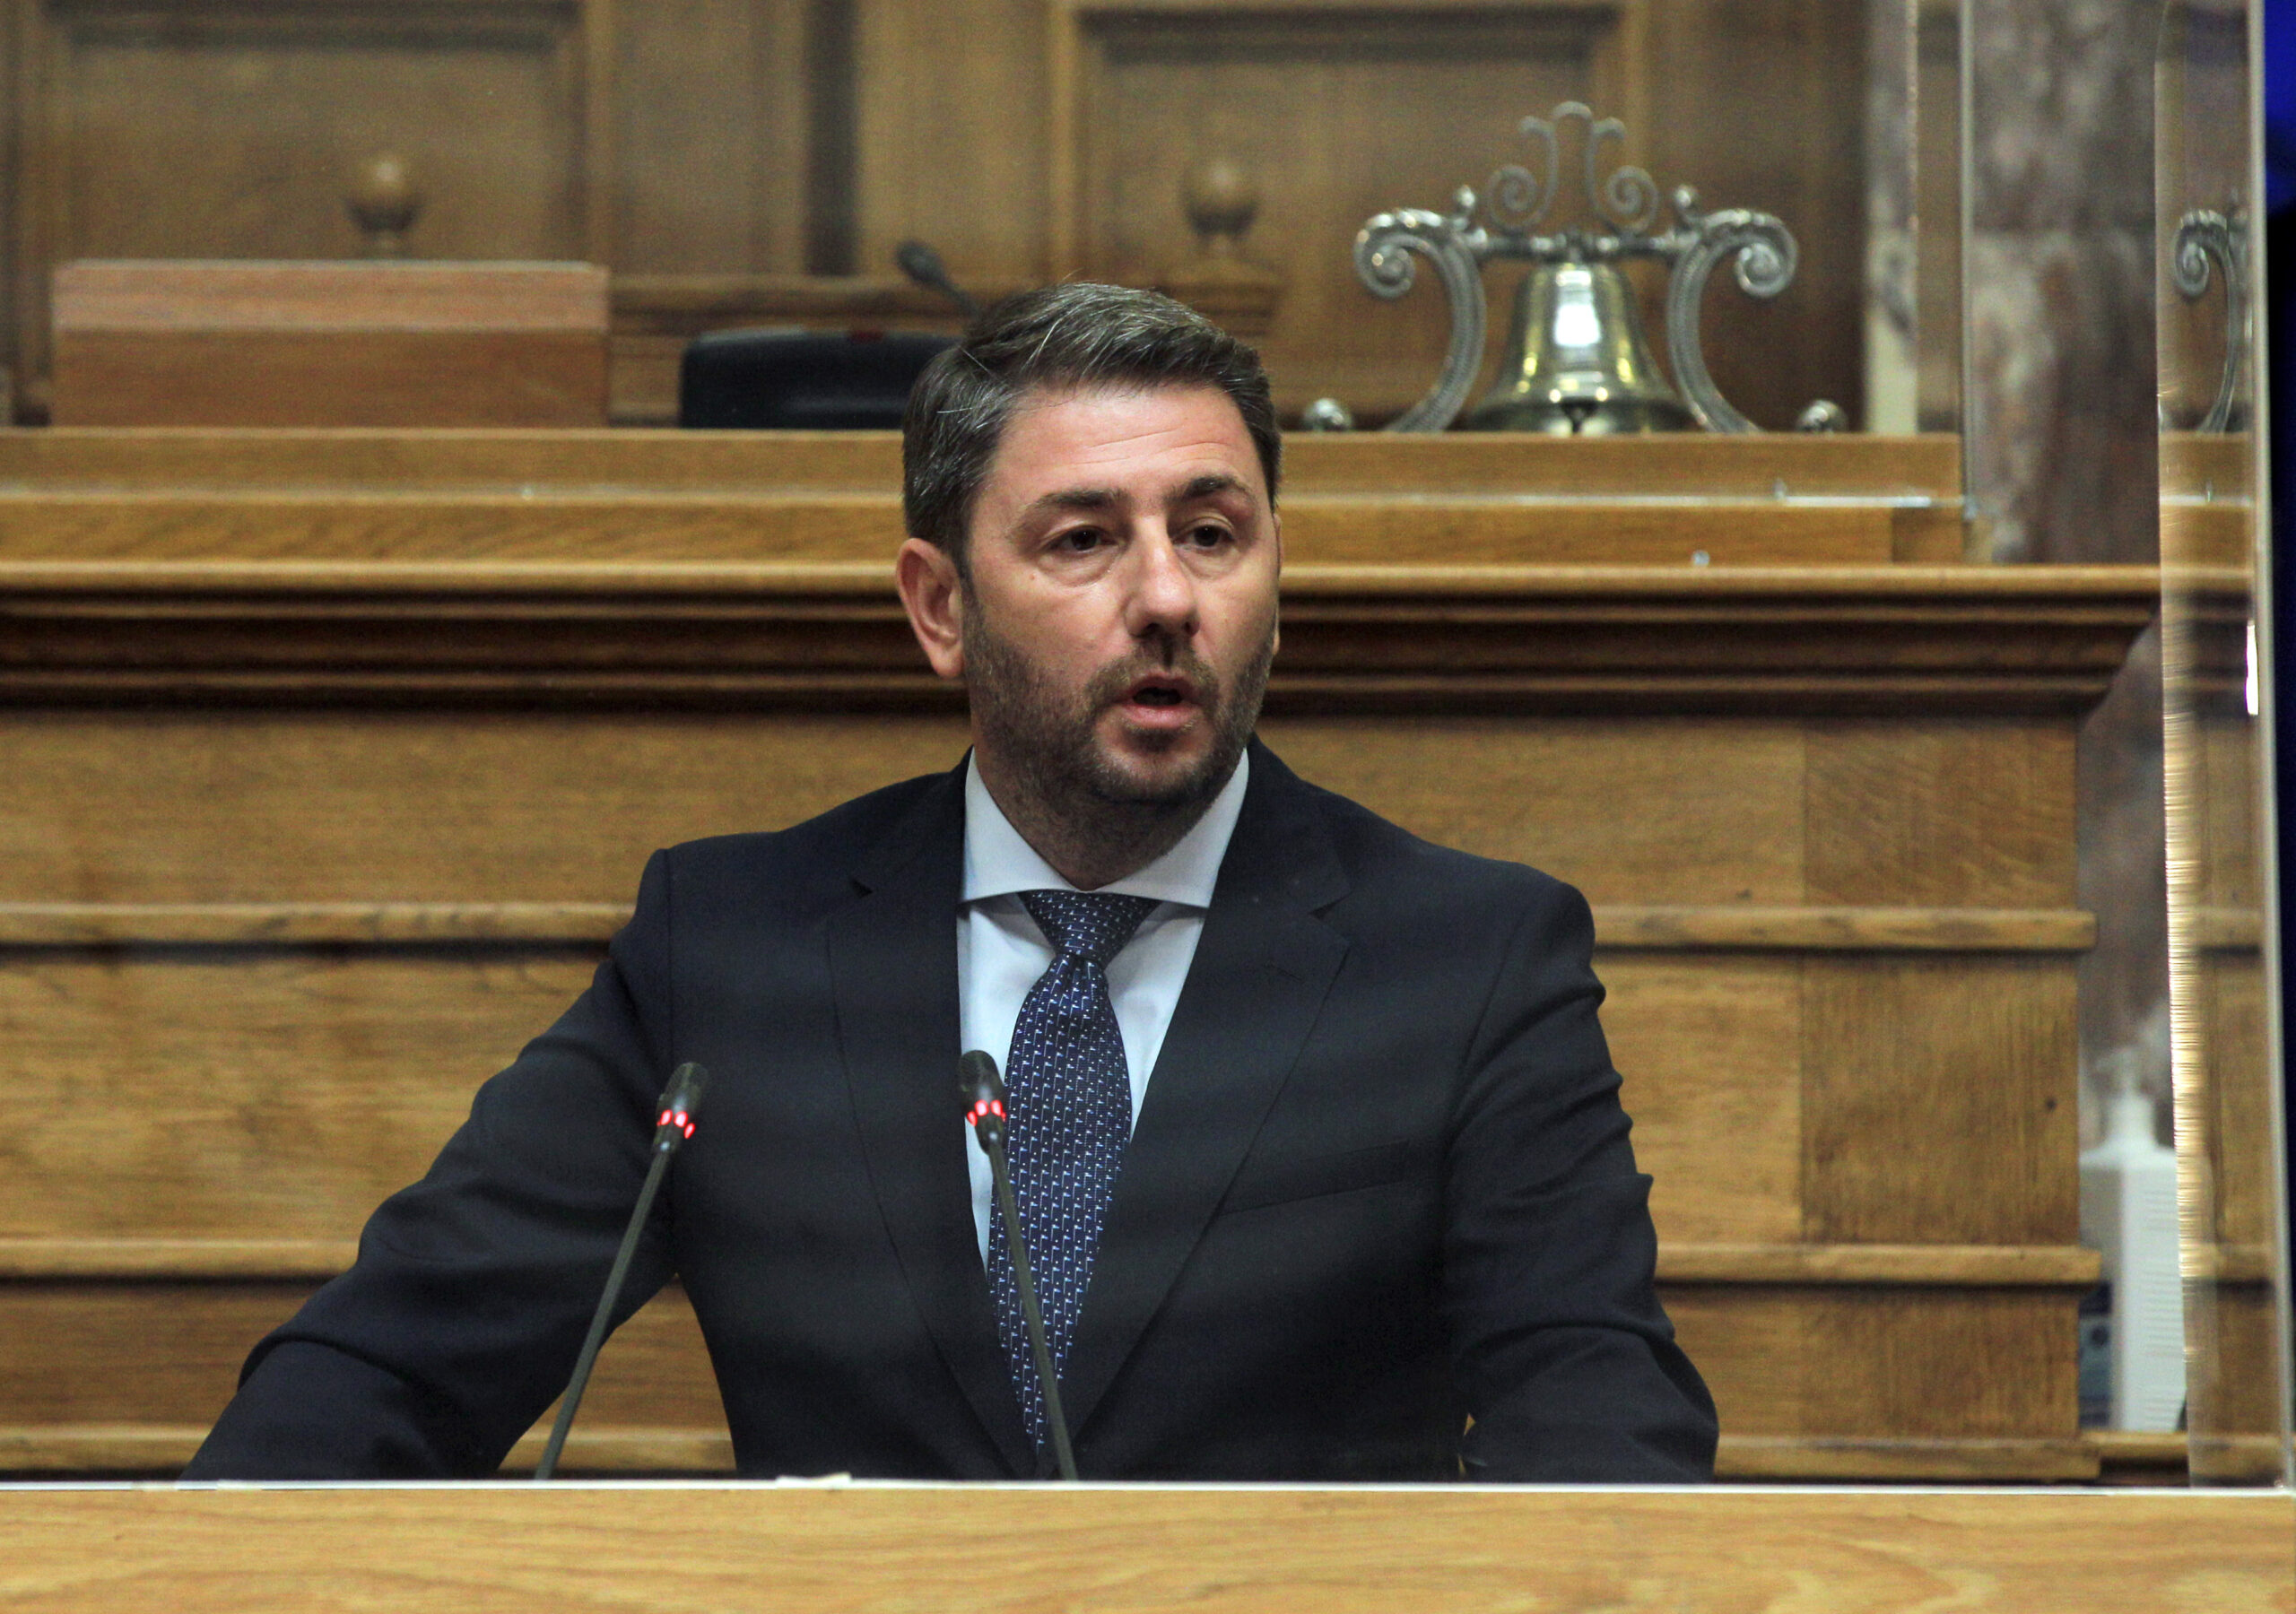 Ν. Ανδρουλάκης: Ο πρωθυπουργός να απαντήσει στα αμείλικτα ερωτήματα και να προκαλέσει αύριο την ενημέρωση της Επιτροπής Θεσμών και Διαφάνειας